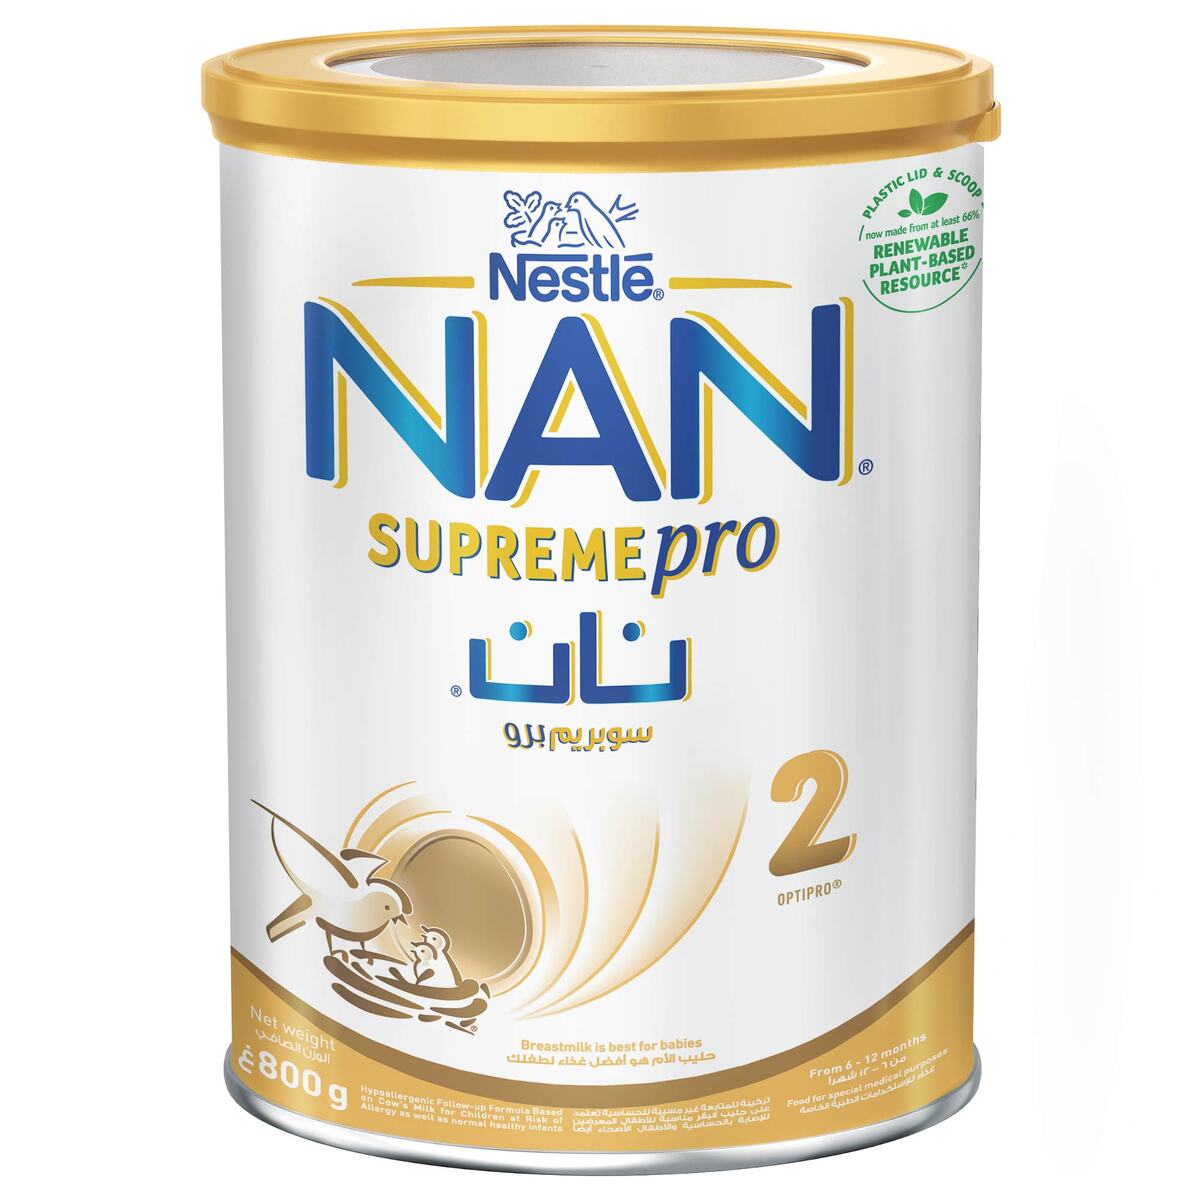 Nan 2 supreme pro 800 gr